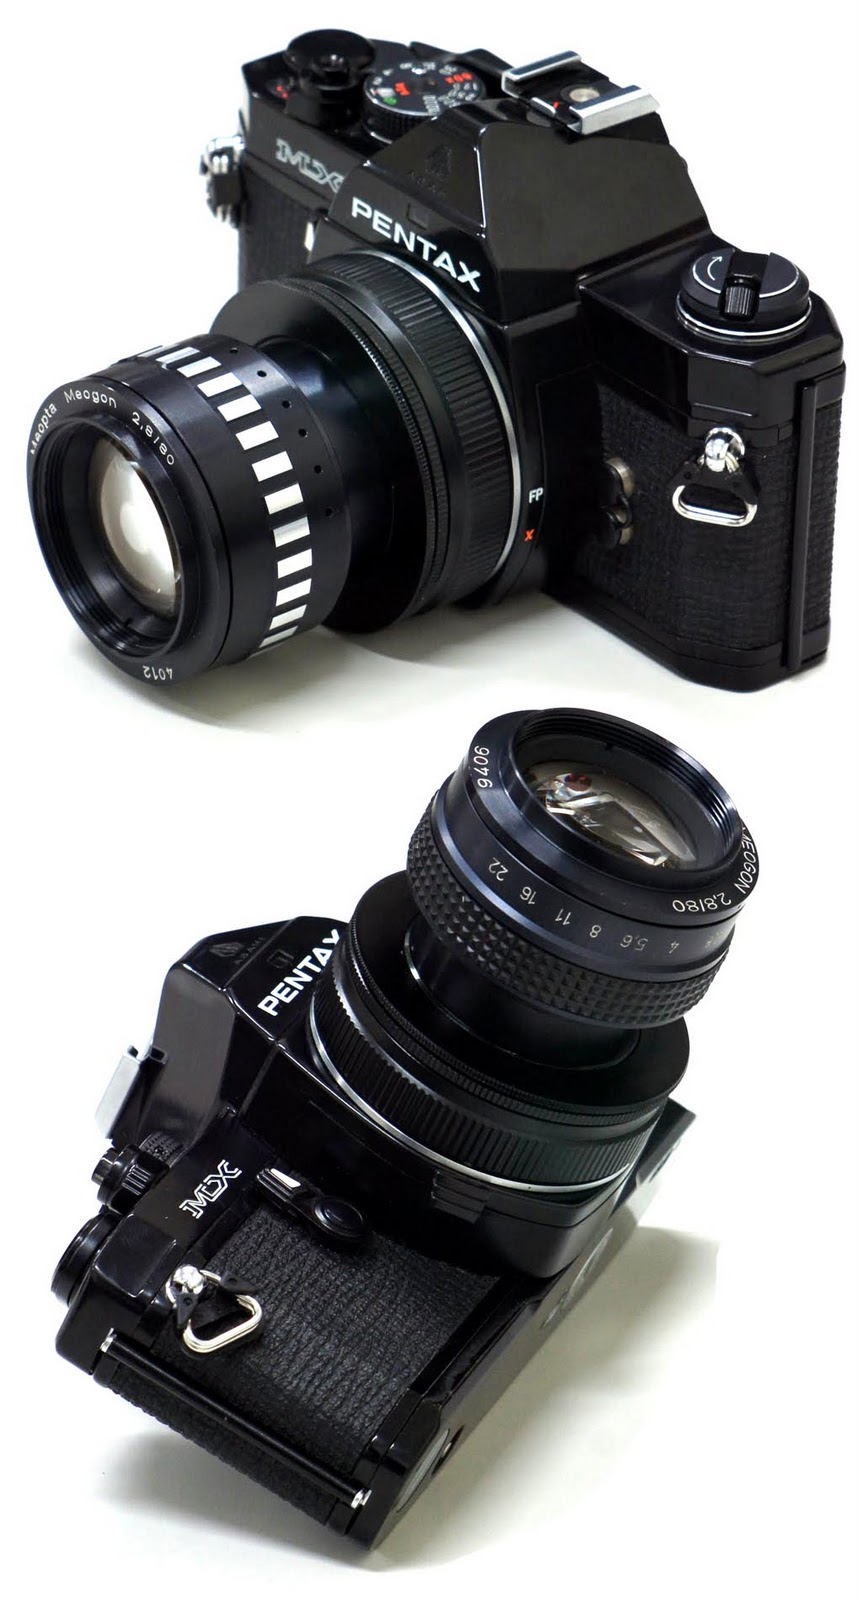 Meopta ステレオマイクロ カメラ、Mirar 3.5/25mm レンズ